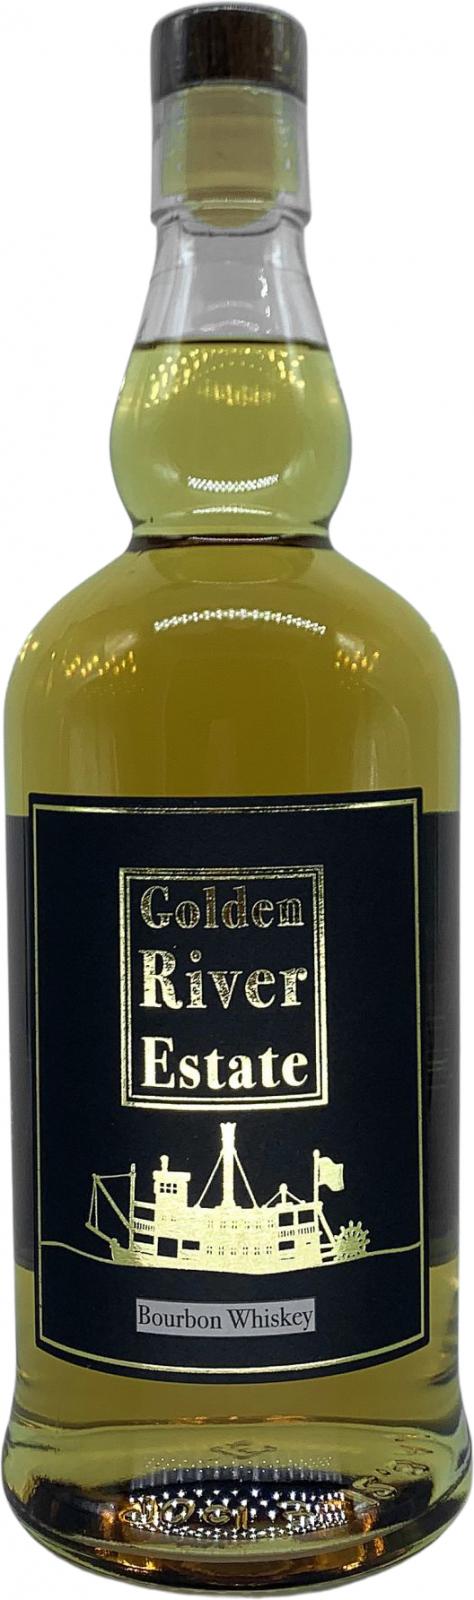 Golden River Estate Bourbon Whiskey